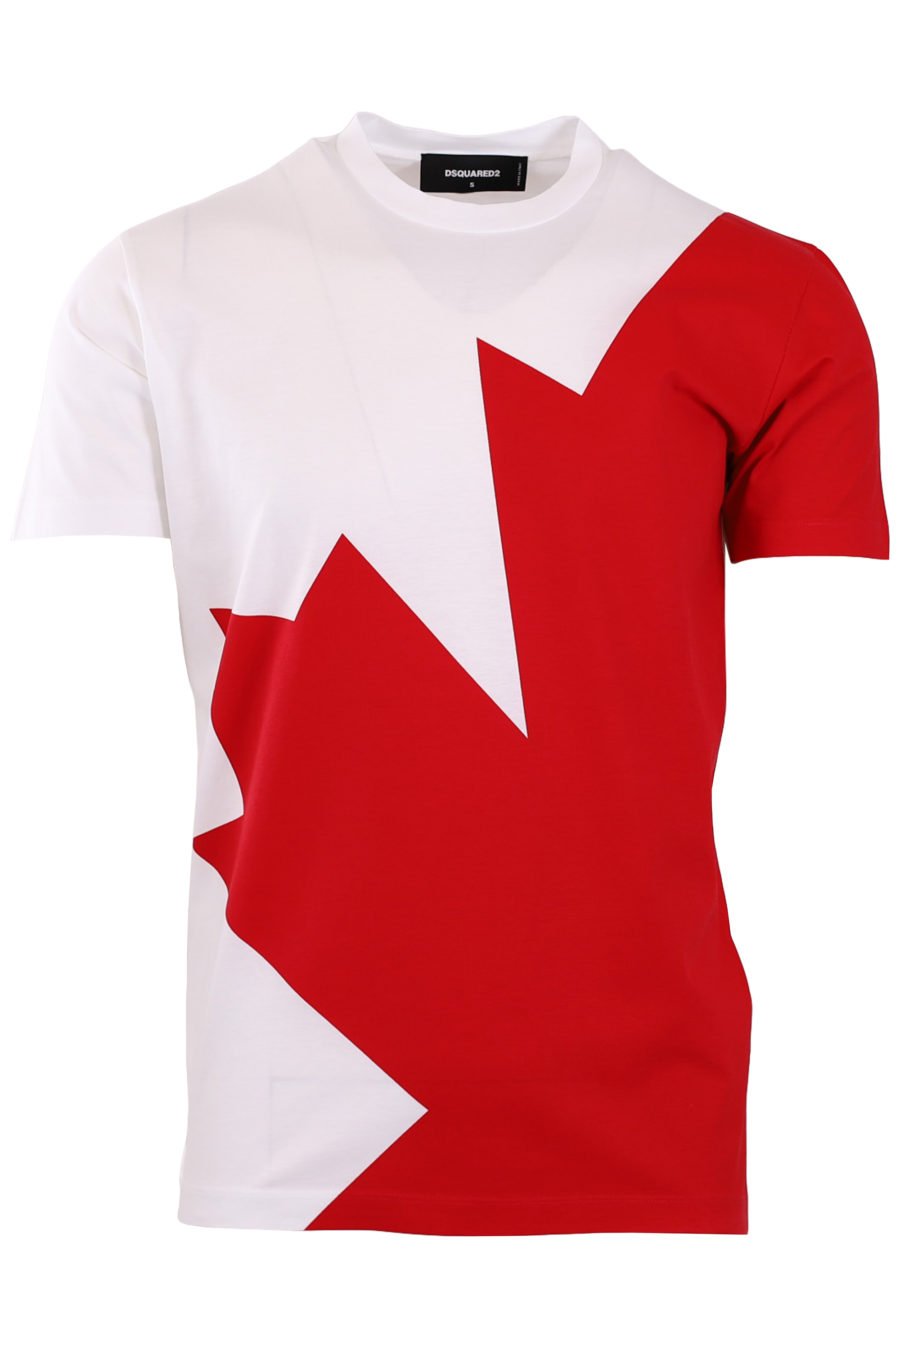 White T-shirt with red print - da32f0cf28db0518d8db01a512e75b9cd5d22fb3